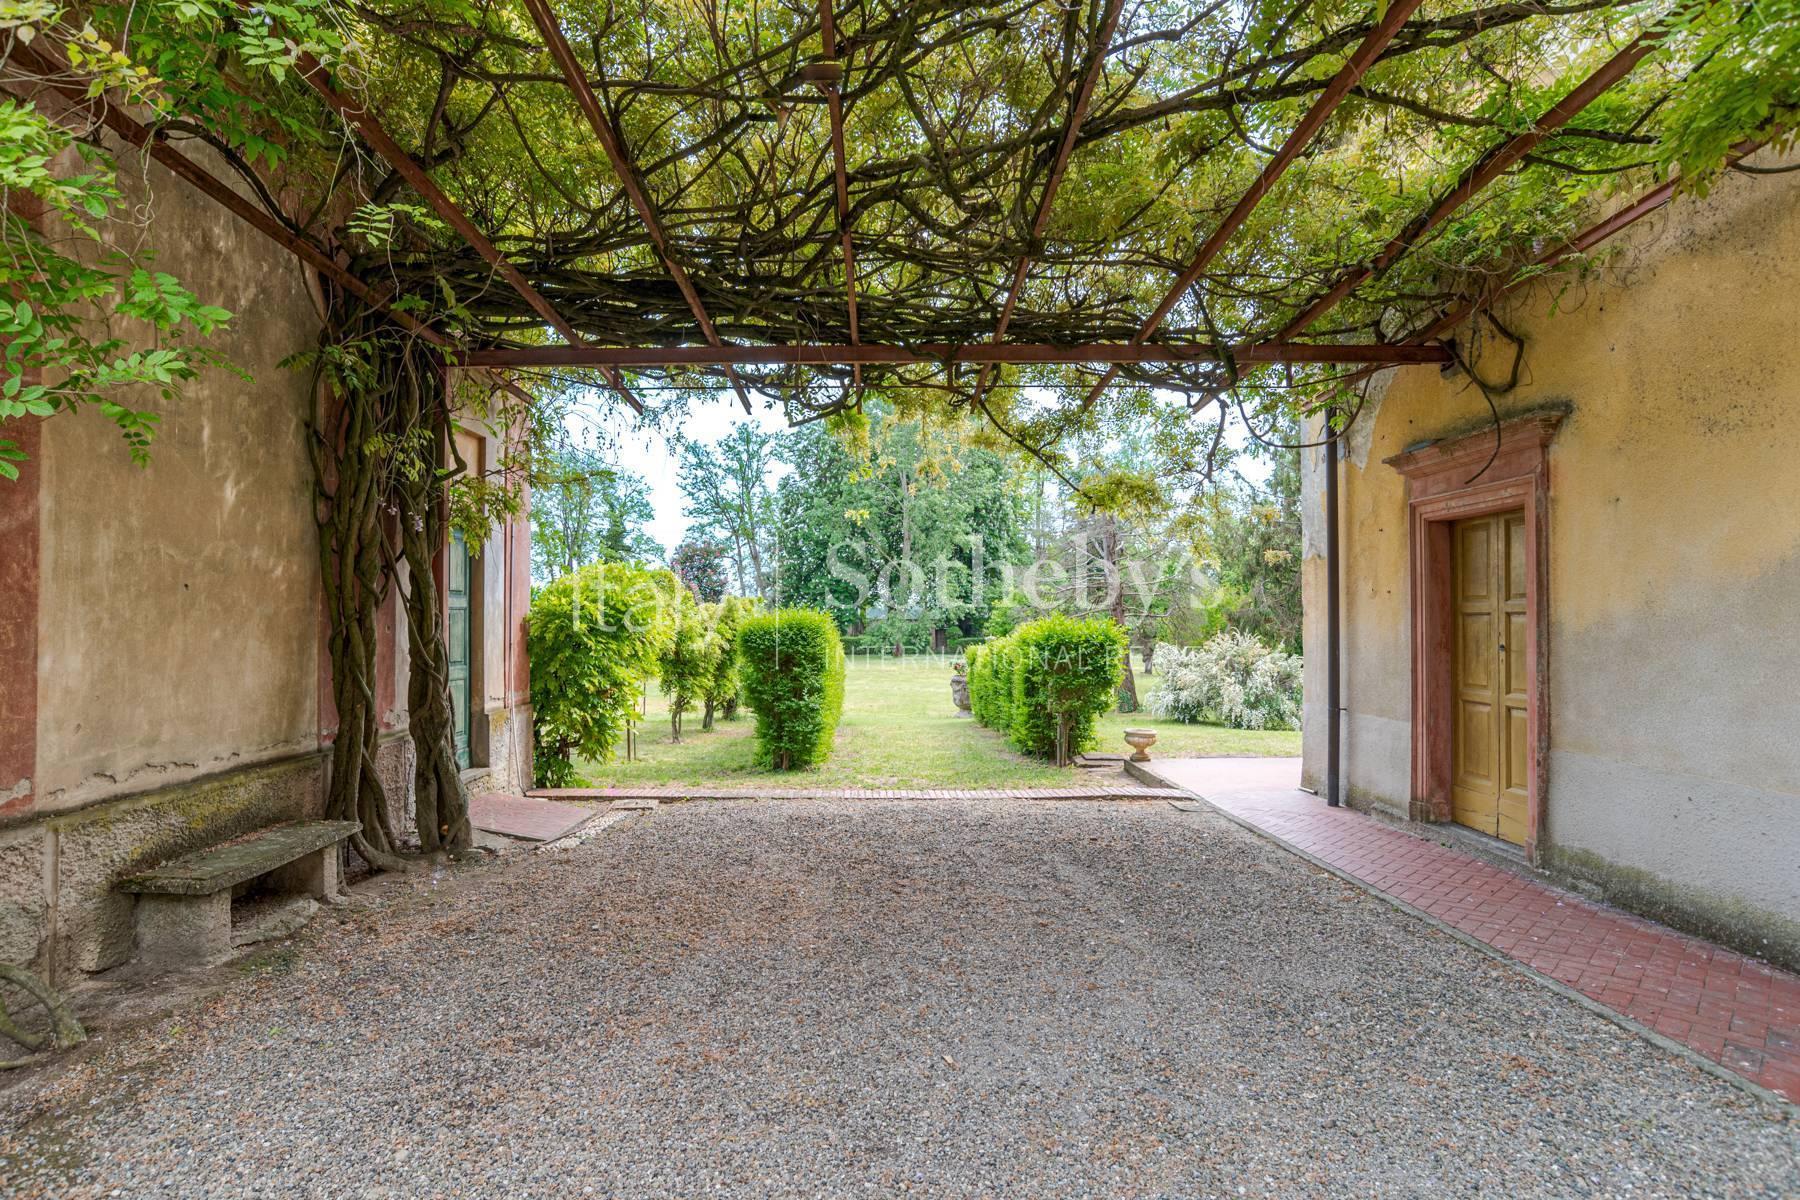 Cascina Bella - 18th century villa with park in Oltrepo' Pavese - 10